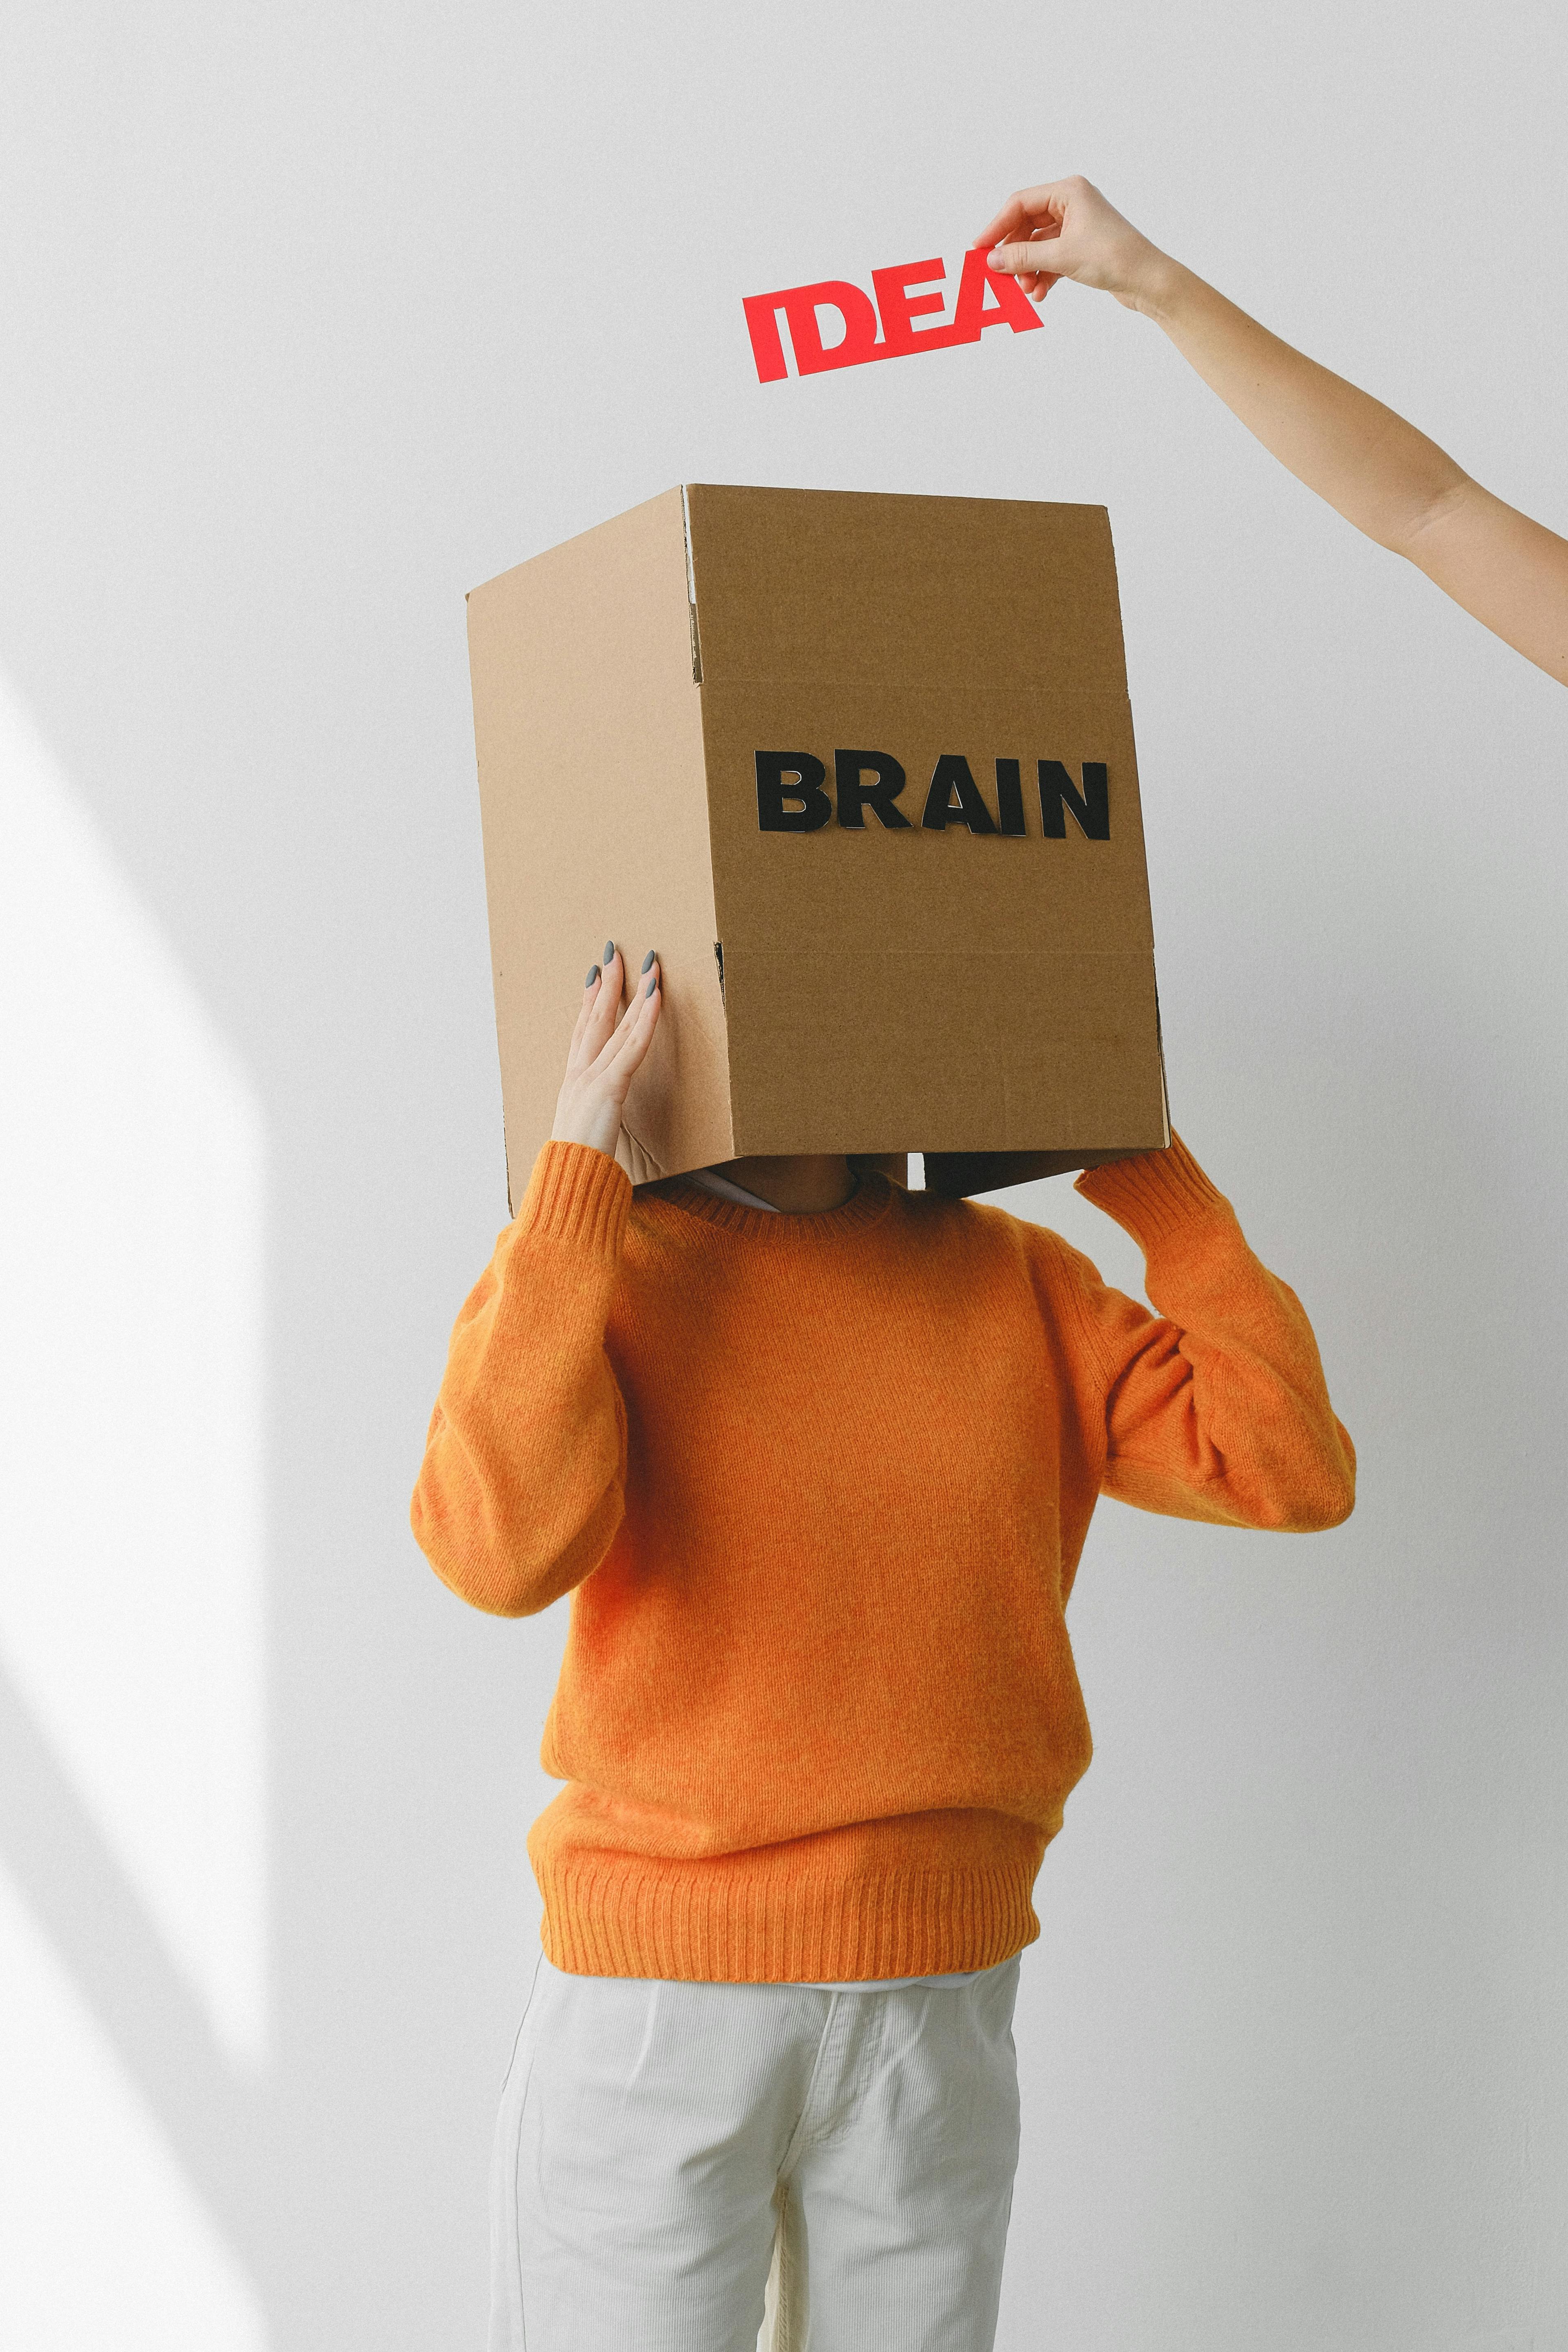 Karton auf dem Kopf mit Aufschrift "Brain" und Schild "Idee" darüber